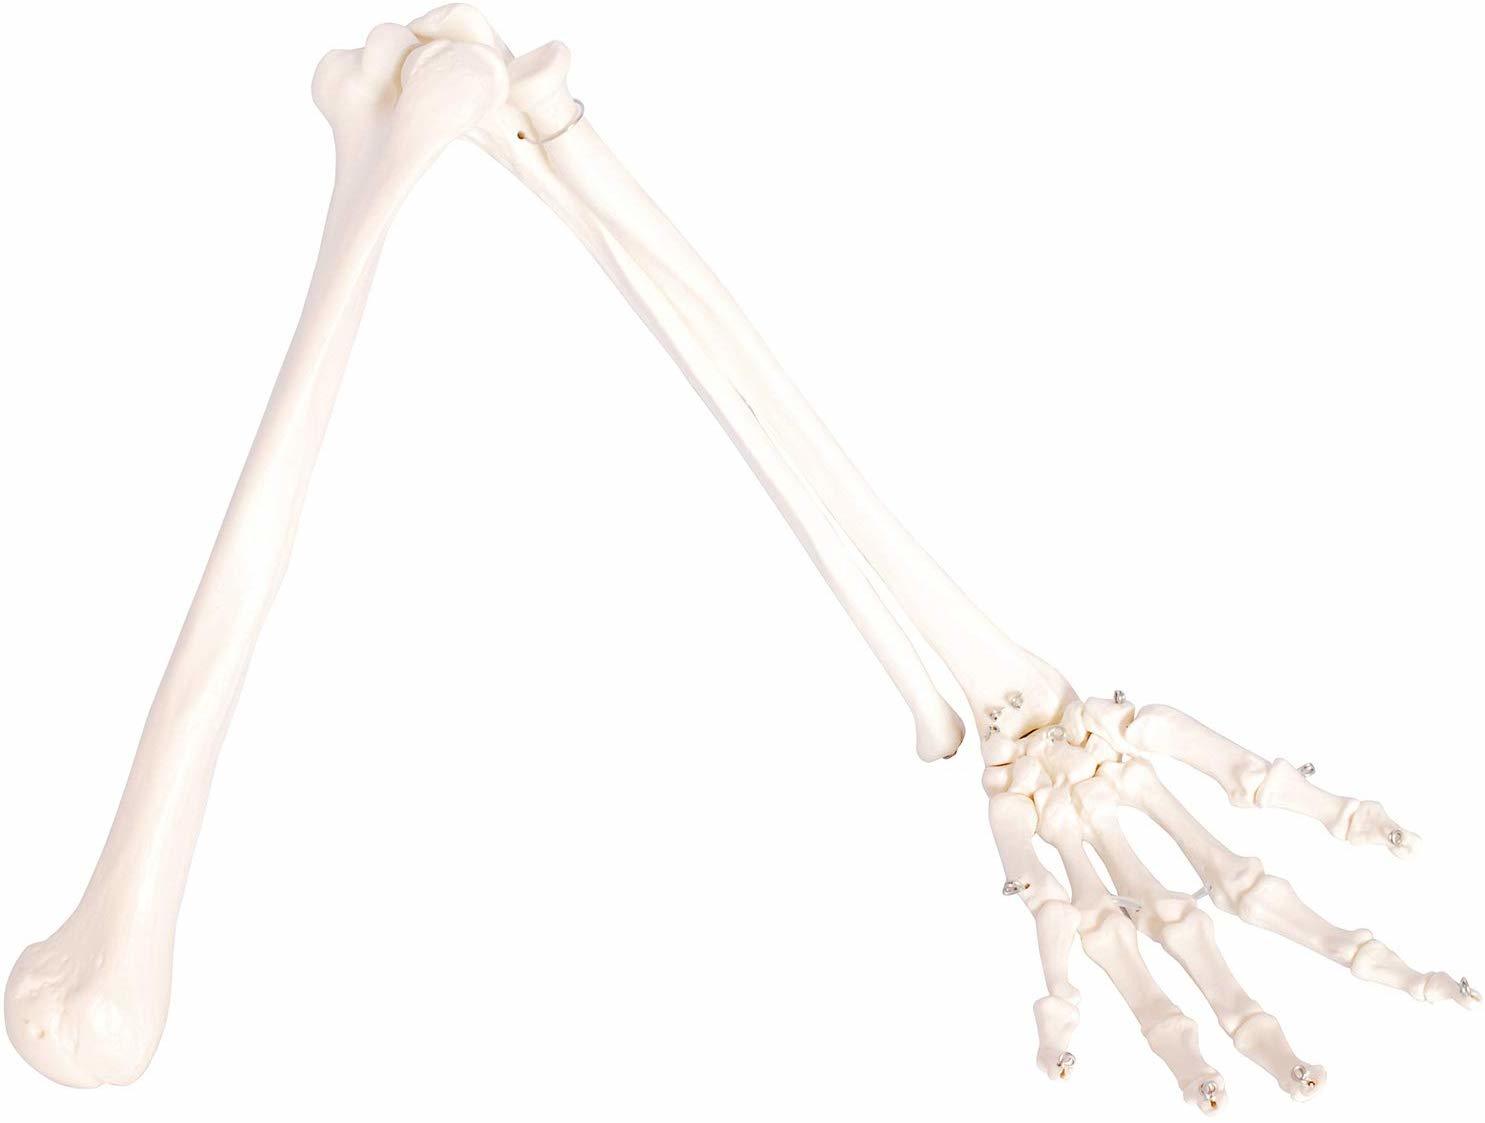 実物大の左手骨模型 人体模型 上肢骨 贈物 上腕骨 発売モデル 前腕 手首 手骨 モデル 等身大 73cm ワイヤーつなぎ 模型 左手